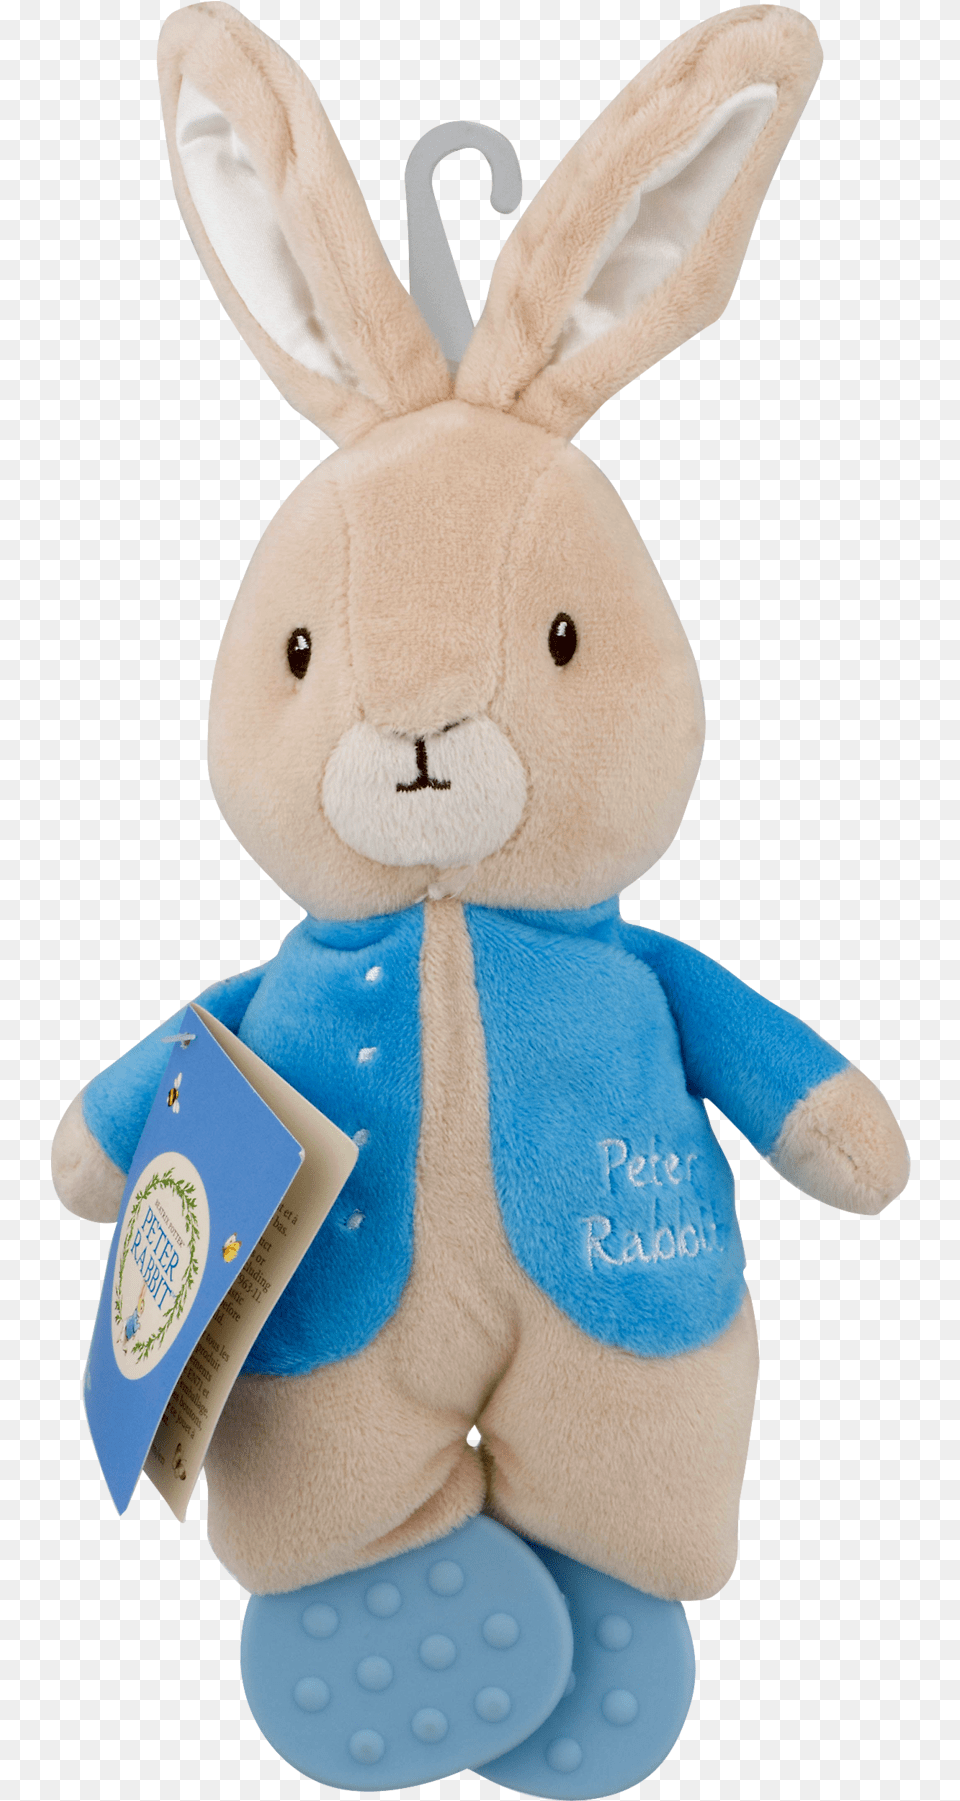 Peter Rabbit Plus, Plush, Toy Free Png Download